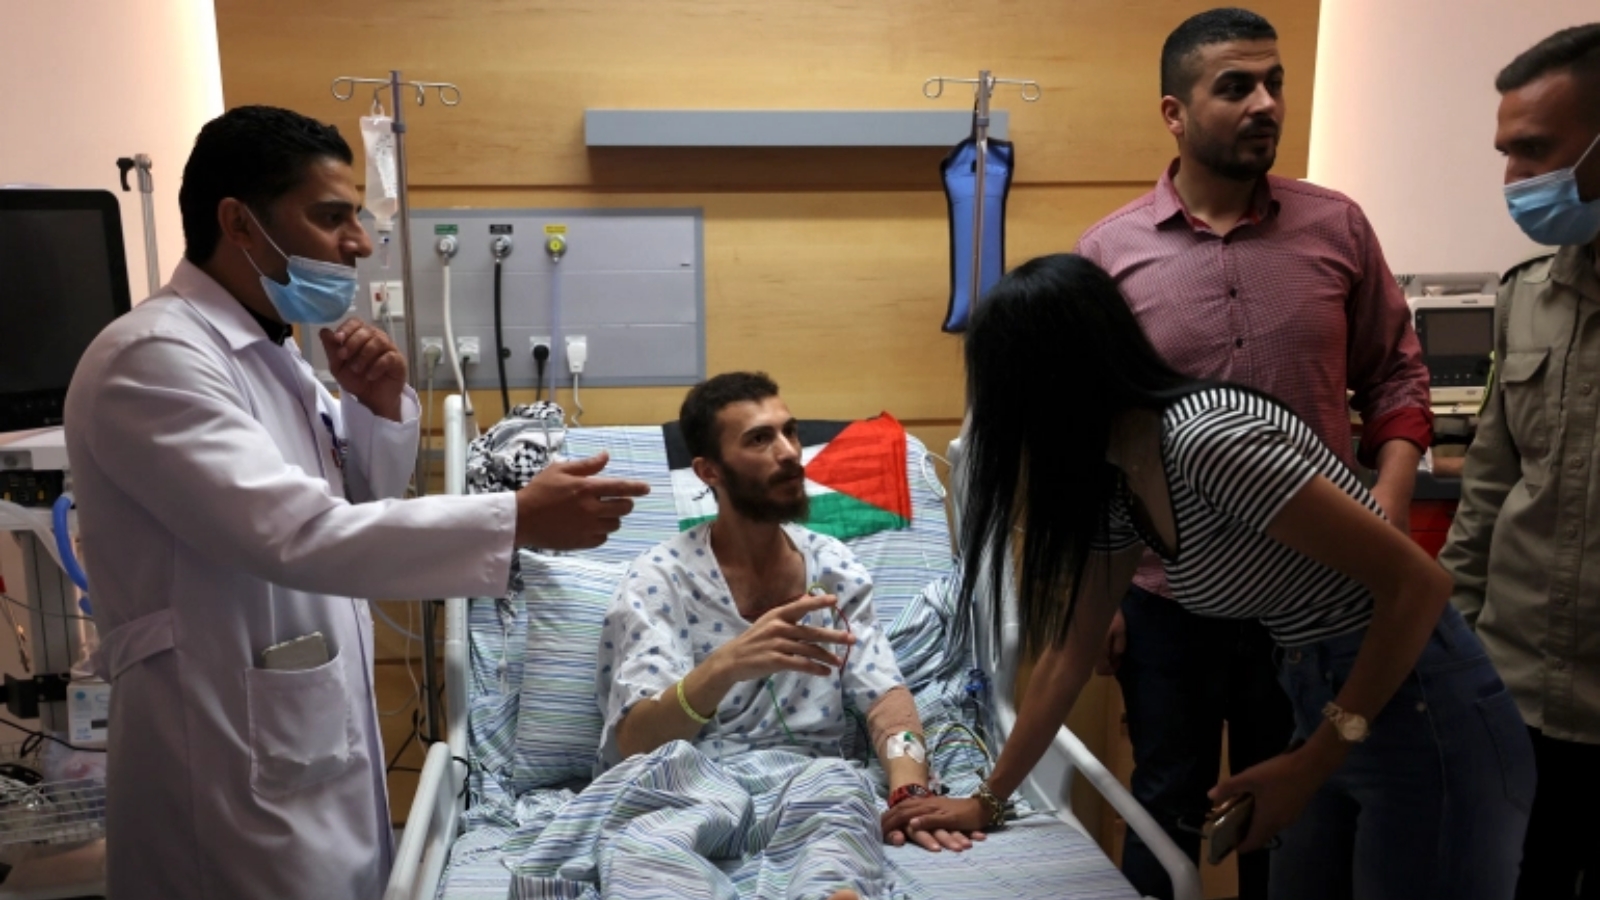 غضنفر أبو عطوان، فلسطيني أُطلق سراحه من المعتقل الإسرائيلي، تلقّى العلاج في يوليو/ تموز بعد إضراب عن الطعام.